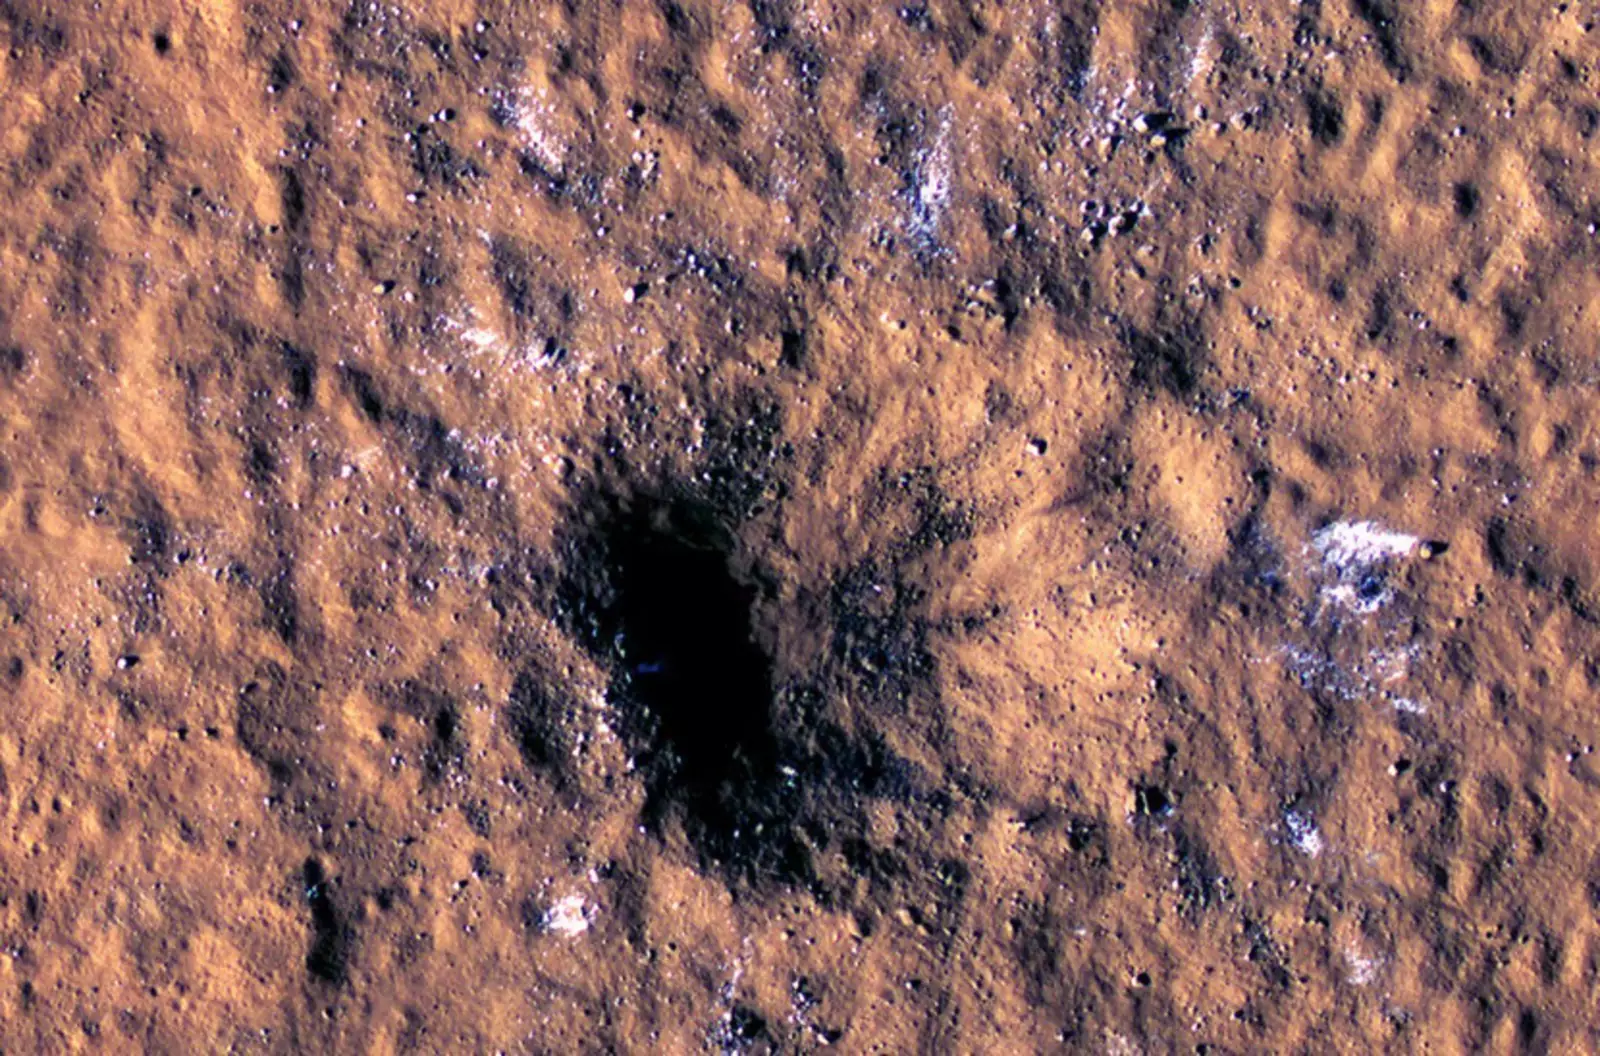 Новый ударный кратер, вид с орбитального аппарата Mars Reconnaissance Orbiter. Белые пятна обозначают куски водяного льда, выброшенные из-под поверхности.